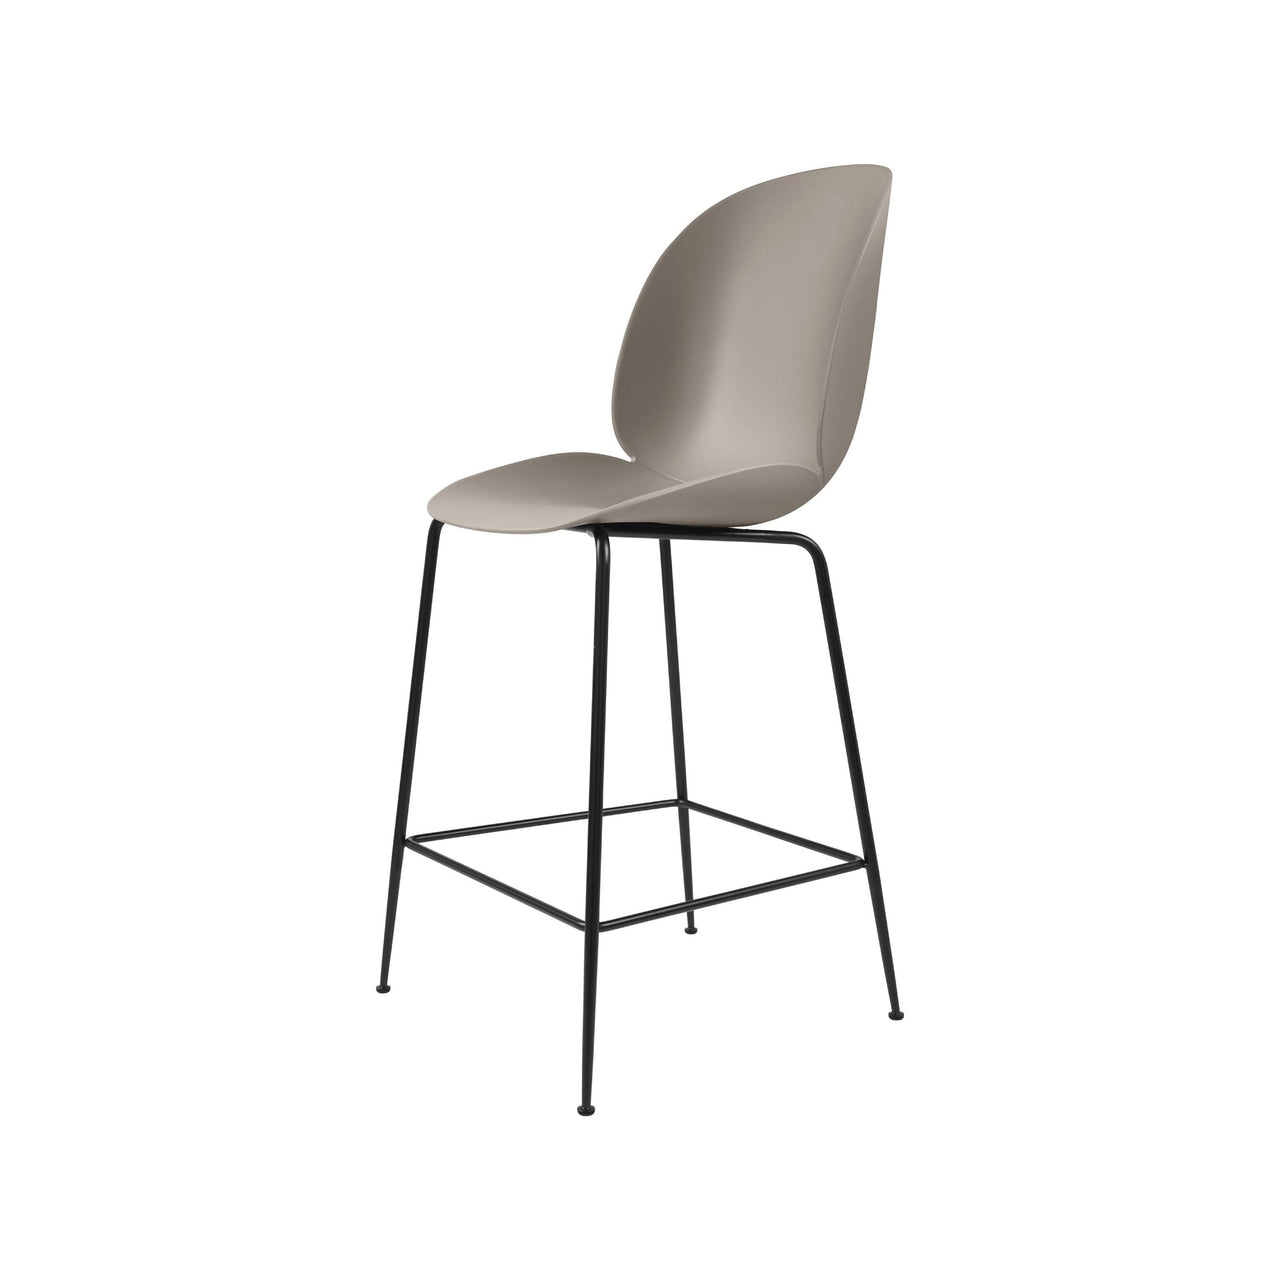 Beetle Bar + Counter Chair: Felt Glides + Counter + New Beige + Black Matt